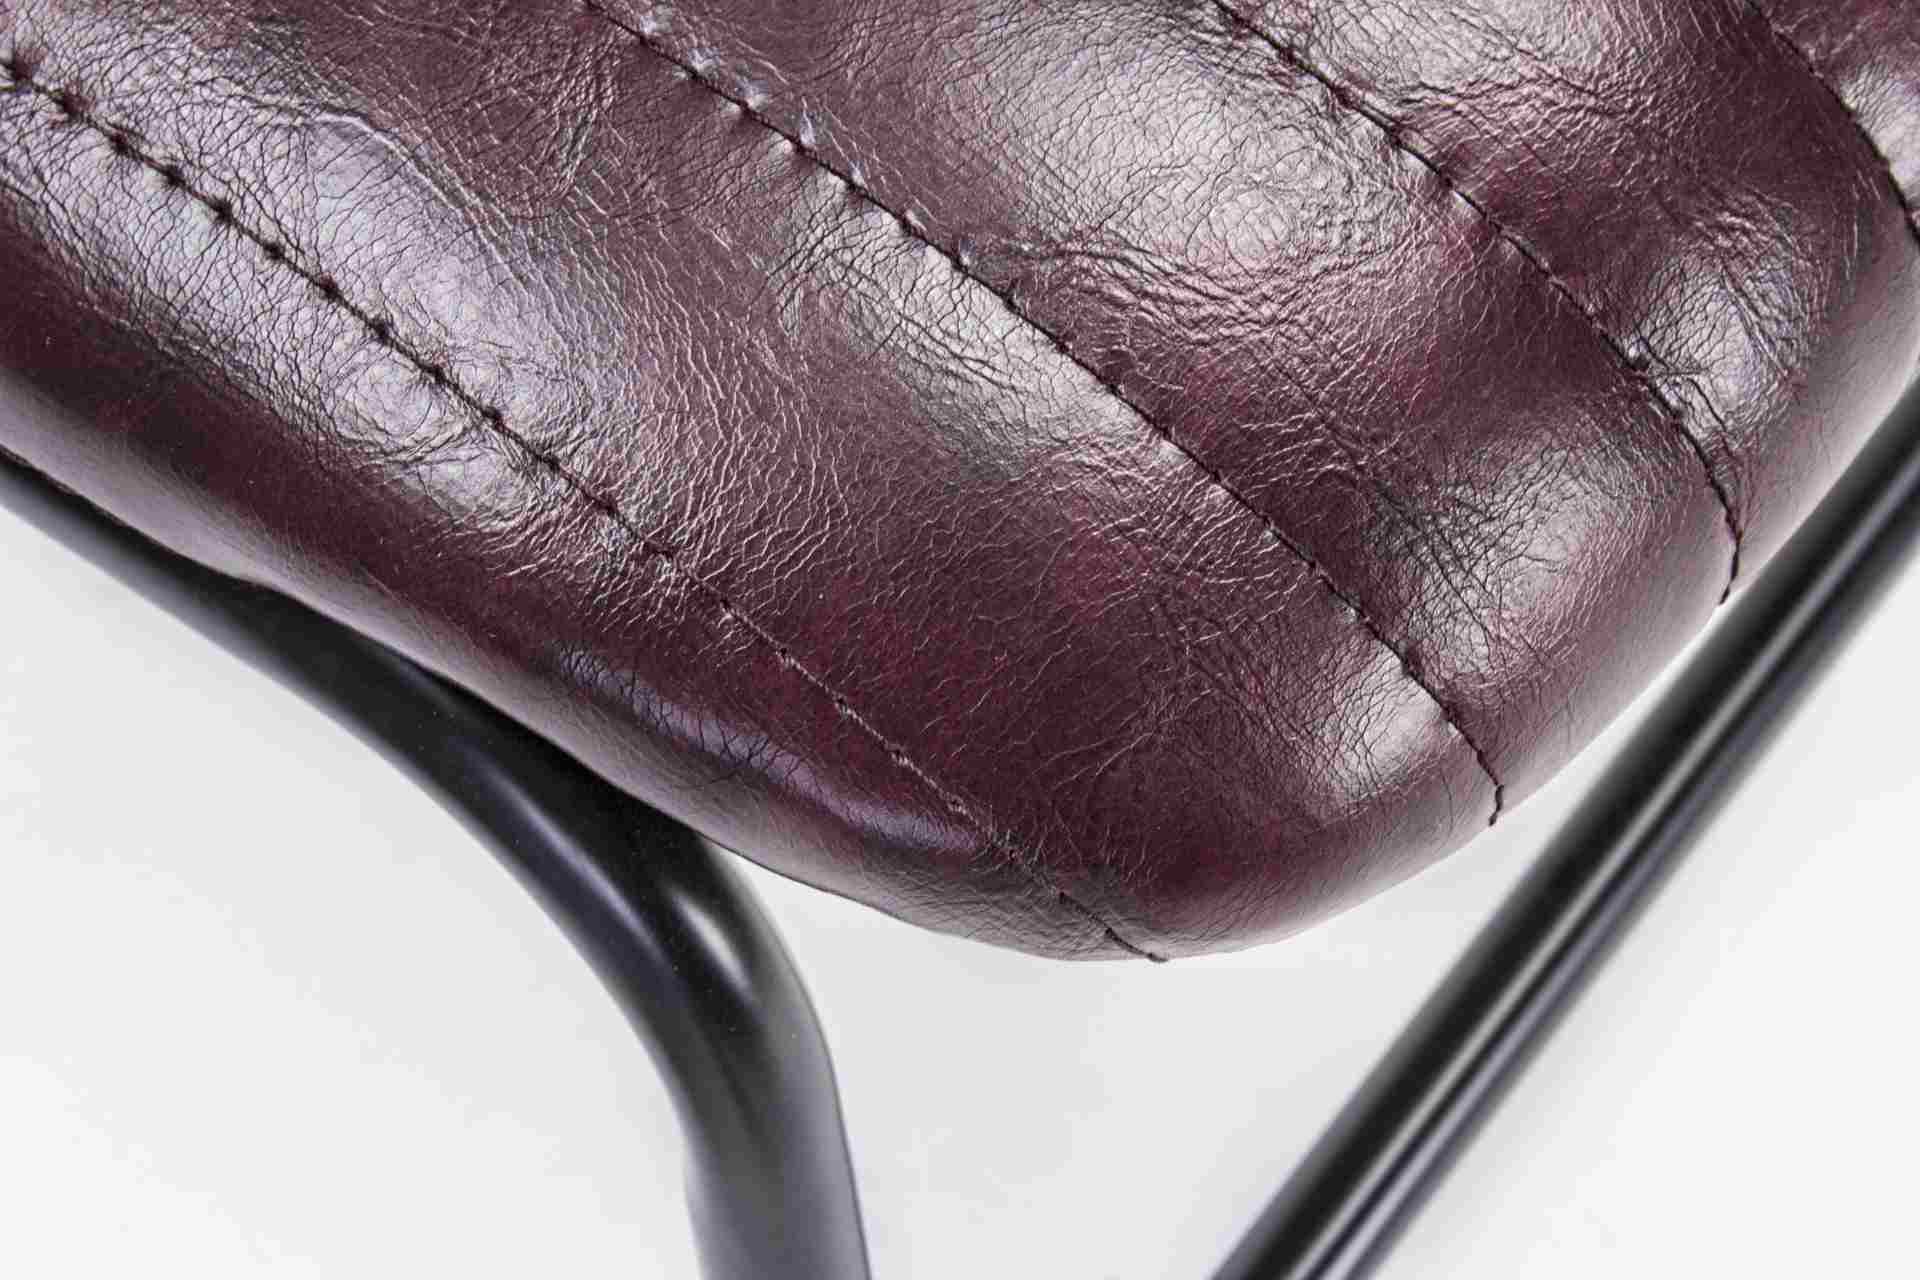 Der Stuhl Debbie überzeugt mit seinem industriellen Design. Gefertigt wurde der Stuhl aus Kunstleder, welches einen weinroten Farbton besitzt. Das Gestell ist aus Metall und ist Schwarz. Die Sitzhöhe beträgt 44 cm.